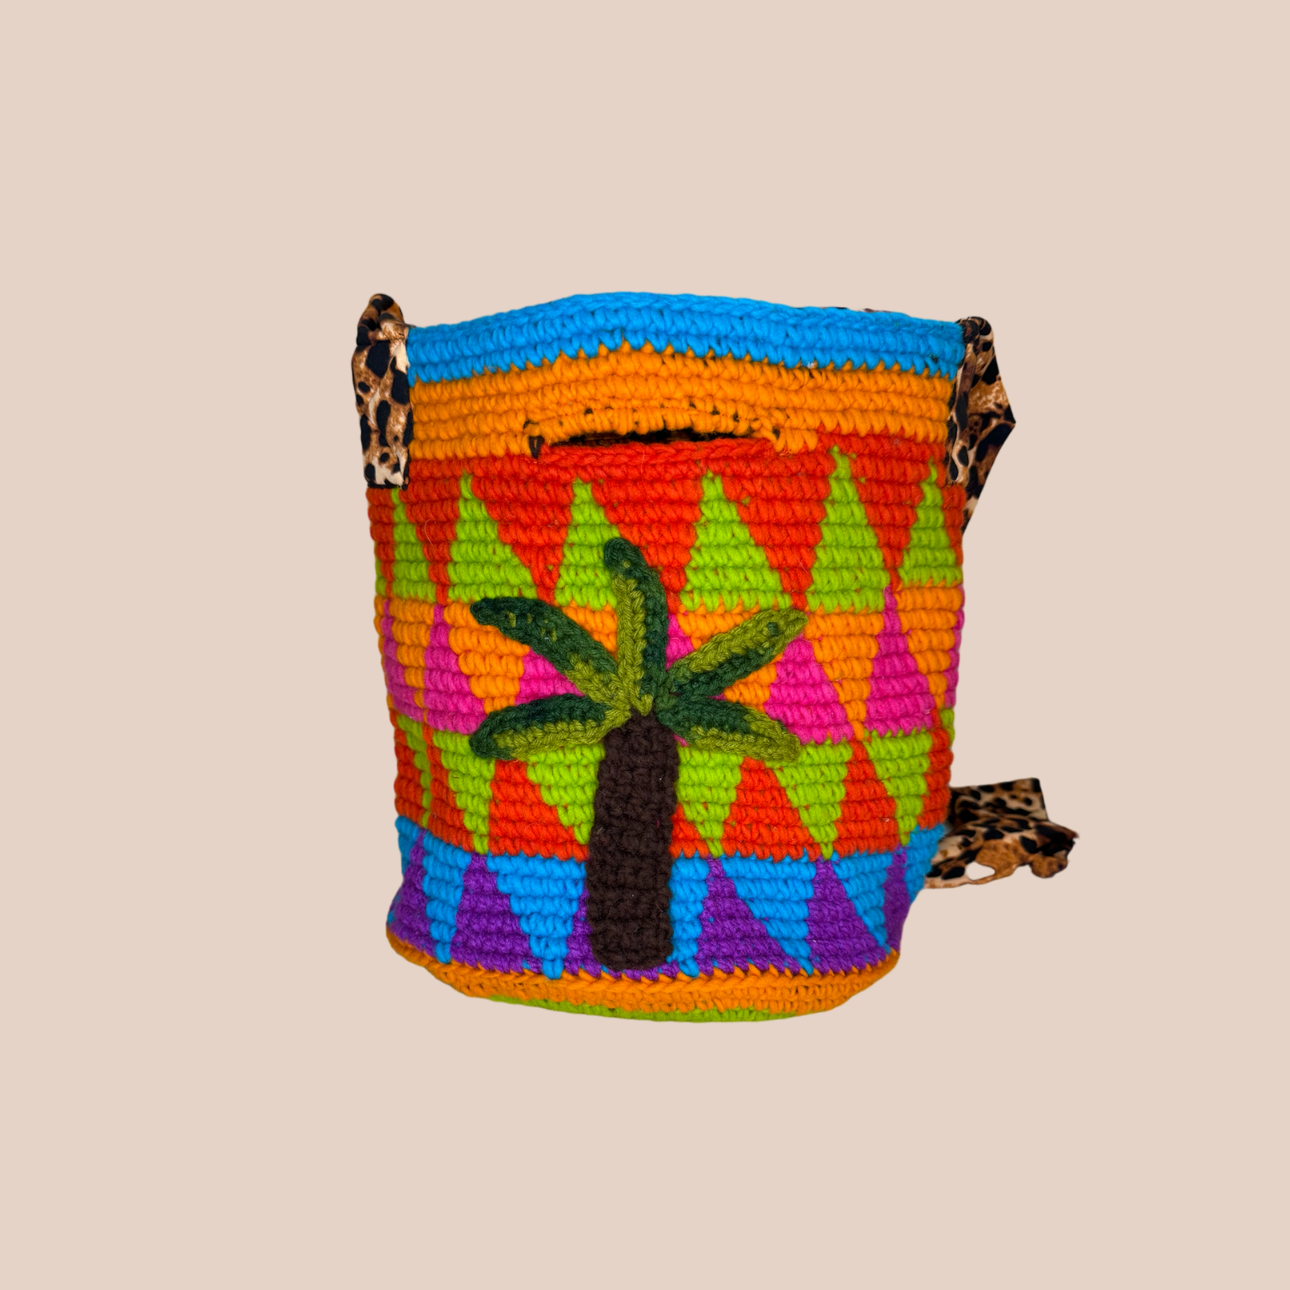  Image du sac motif palmier, doublure et anses réglable imprimé leopard de Maison Badigo, sac en laine crocheté multicolore unique et tendance